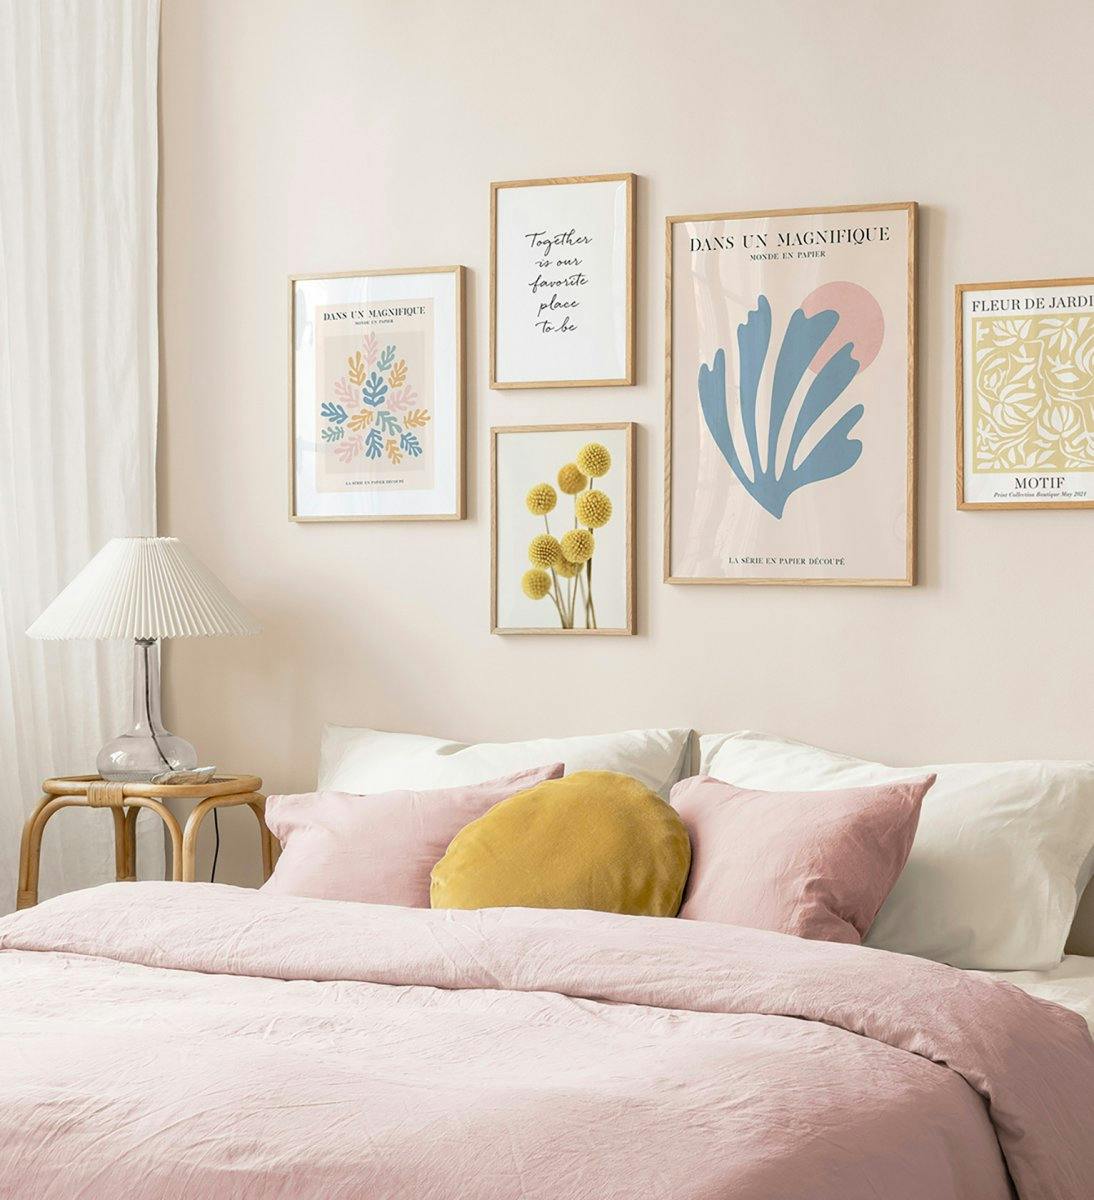 Modna ściana galerii w spokojnych kolorach i dębowe ramy do sypialni